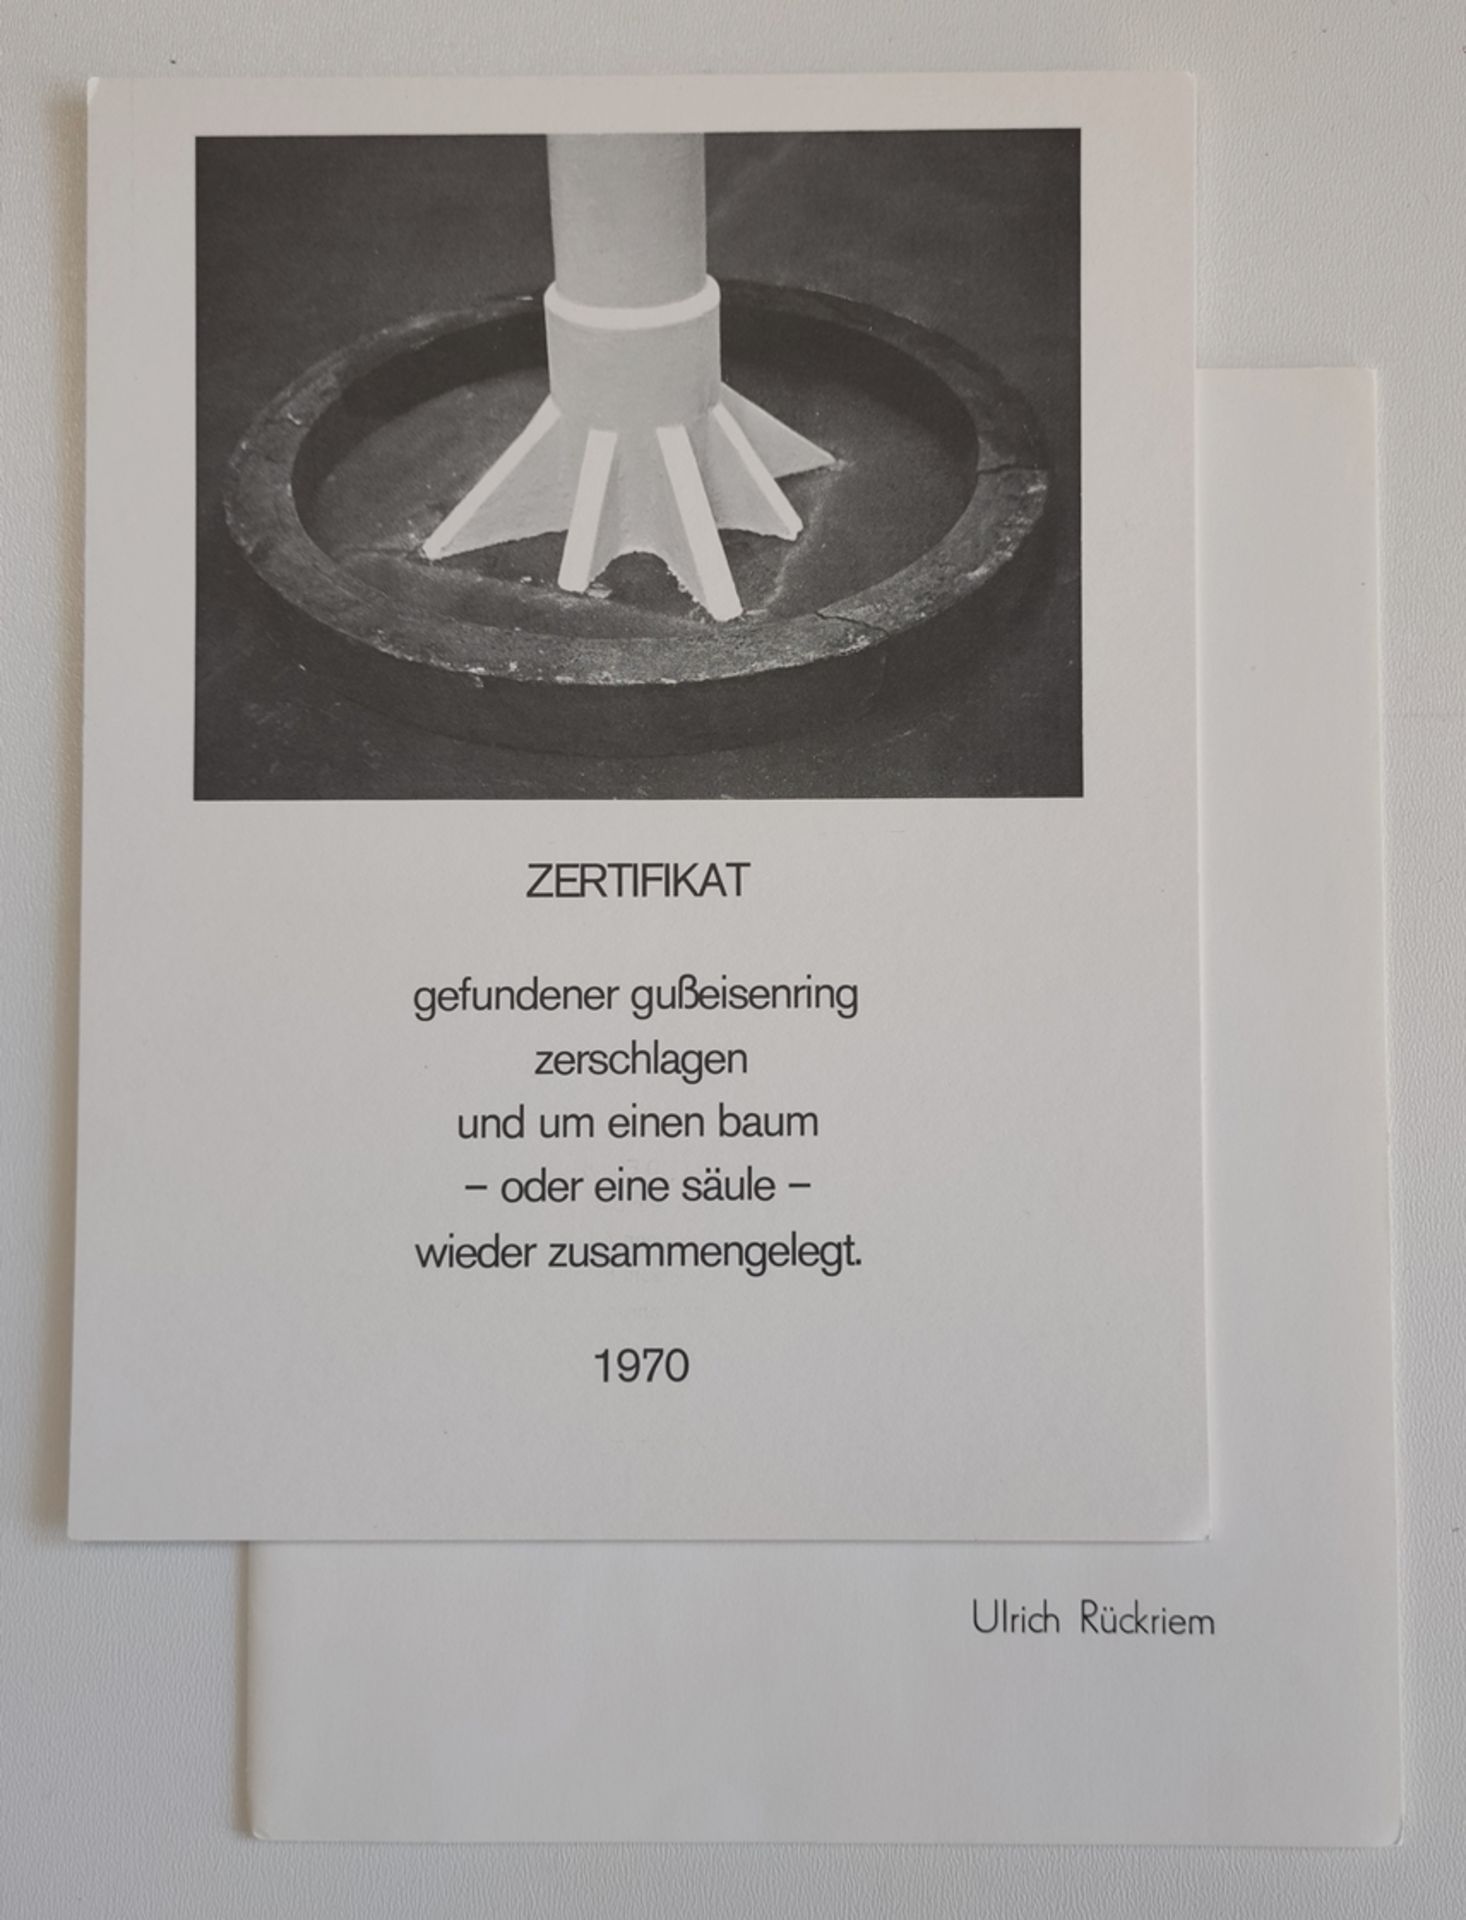 Catalogue of Städtisches Museum Mönchengladbach "Beleg II. Neuerwerbungen 1969-1972", cardboard box - Image 4 of 4